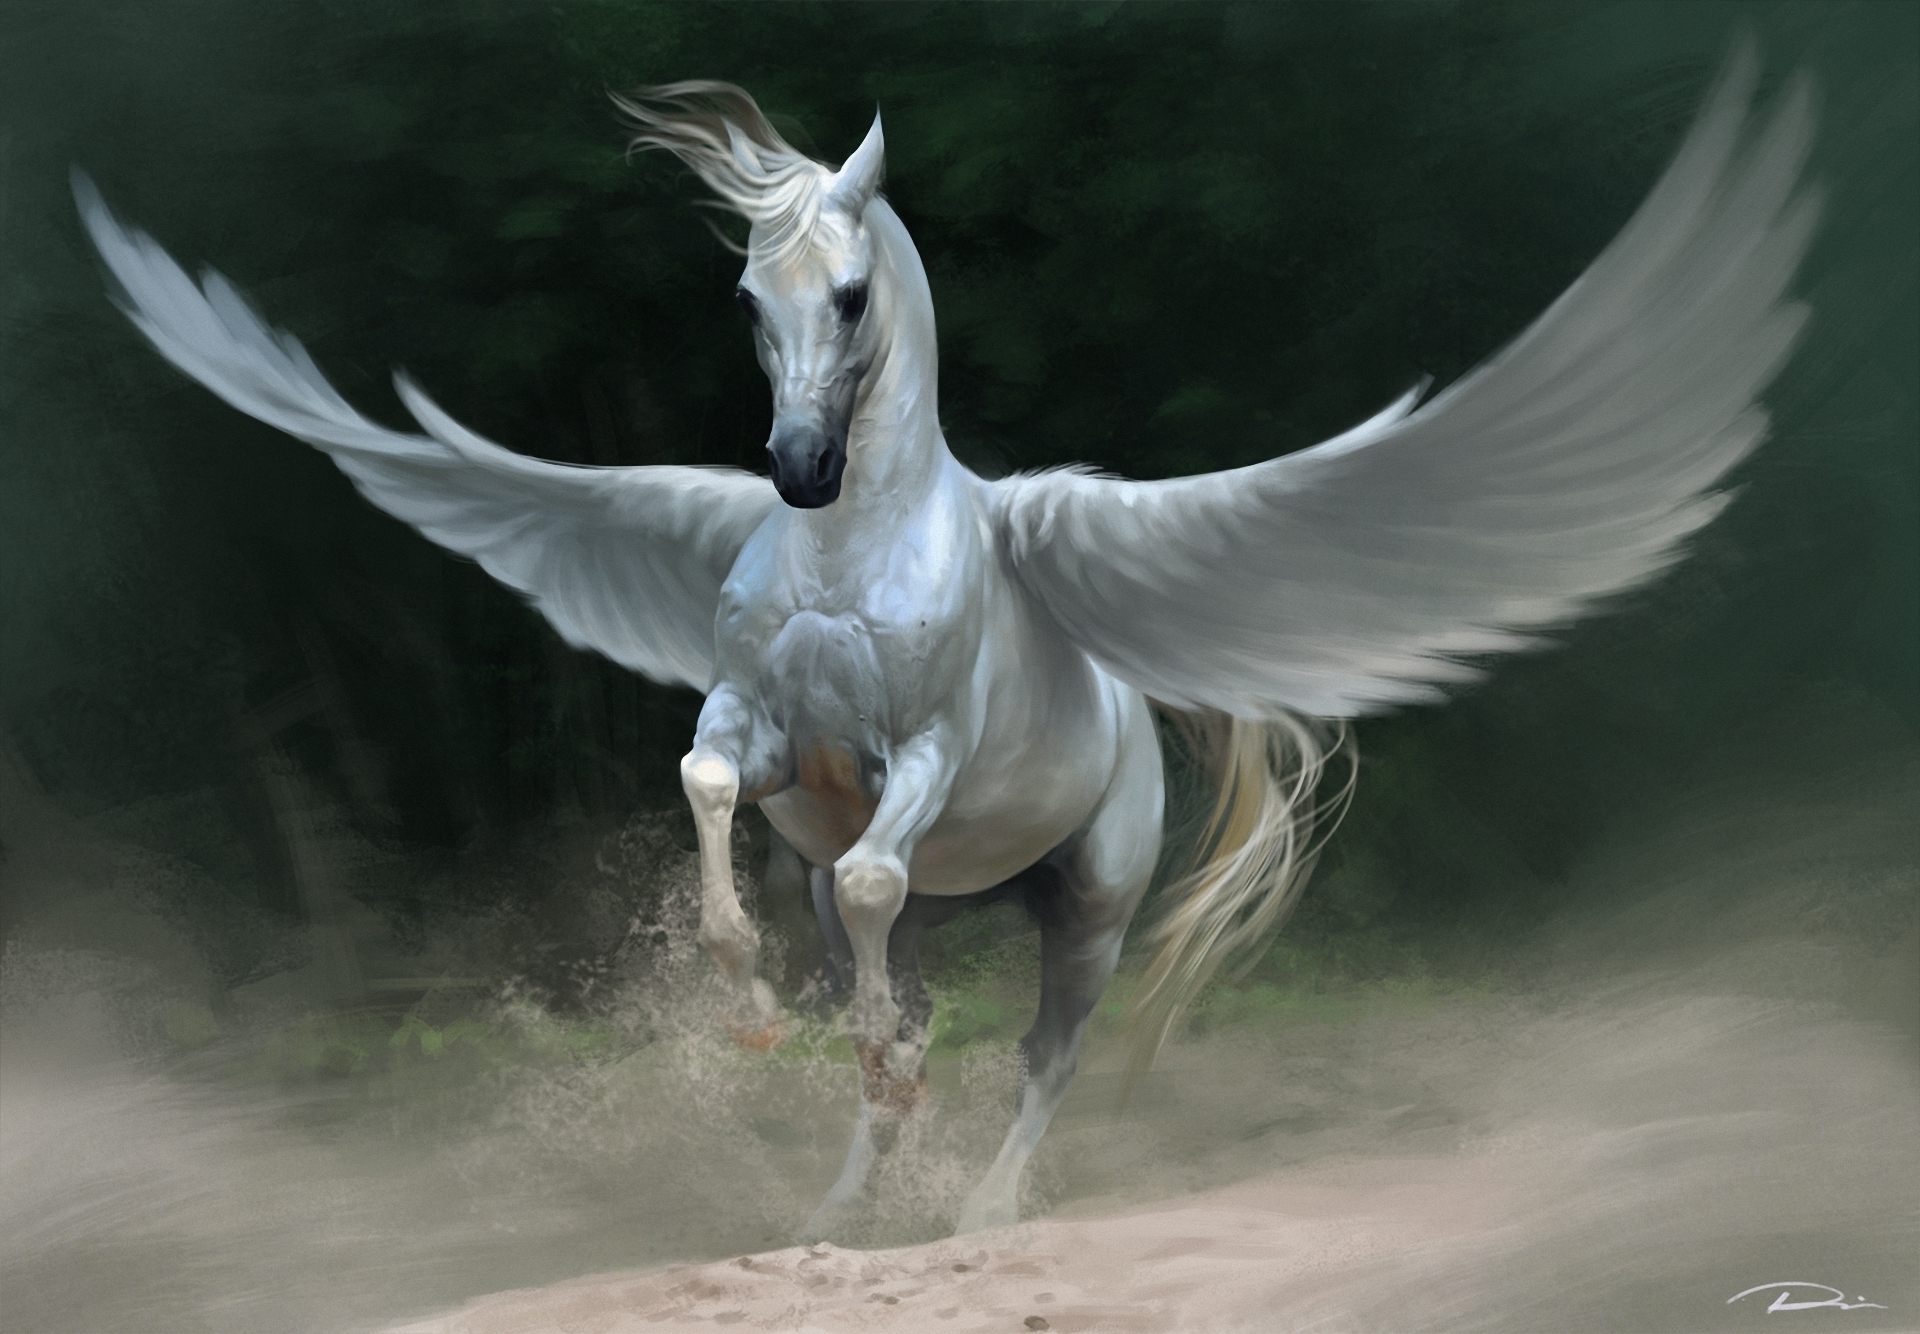 Bakgrunnsbilder Pegasus Fantasy Magiske dyr